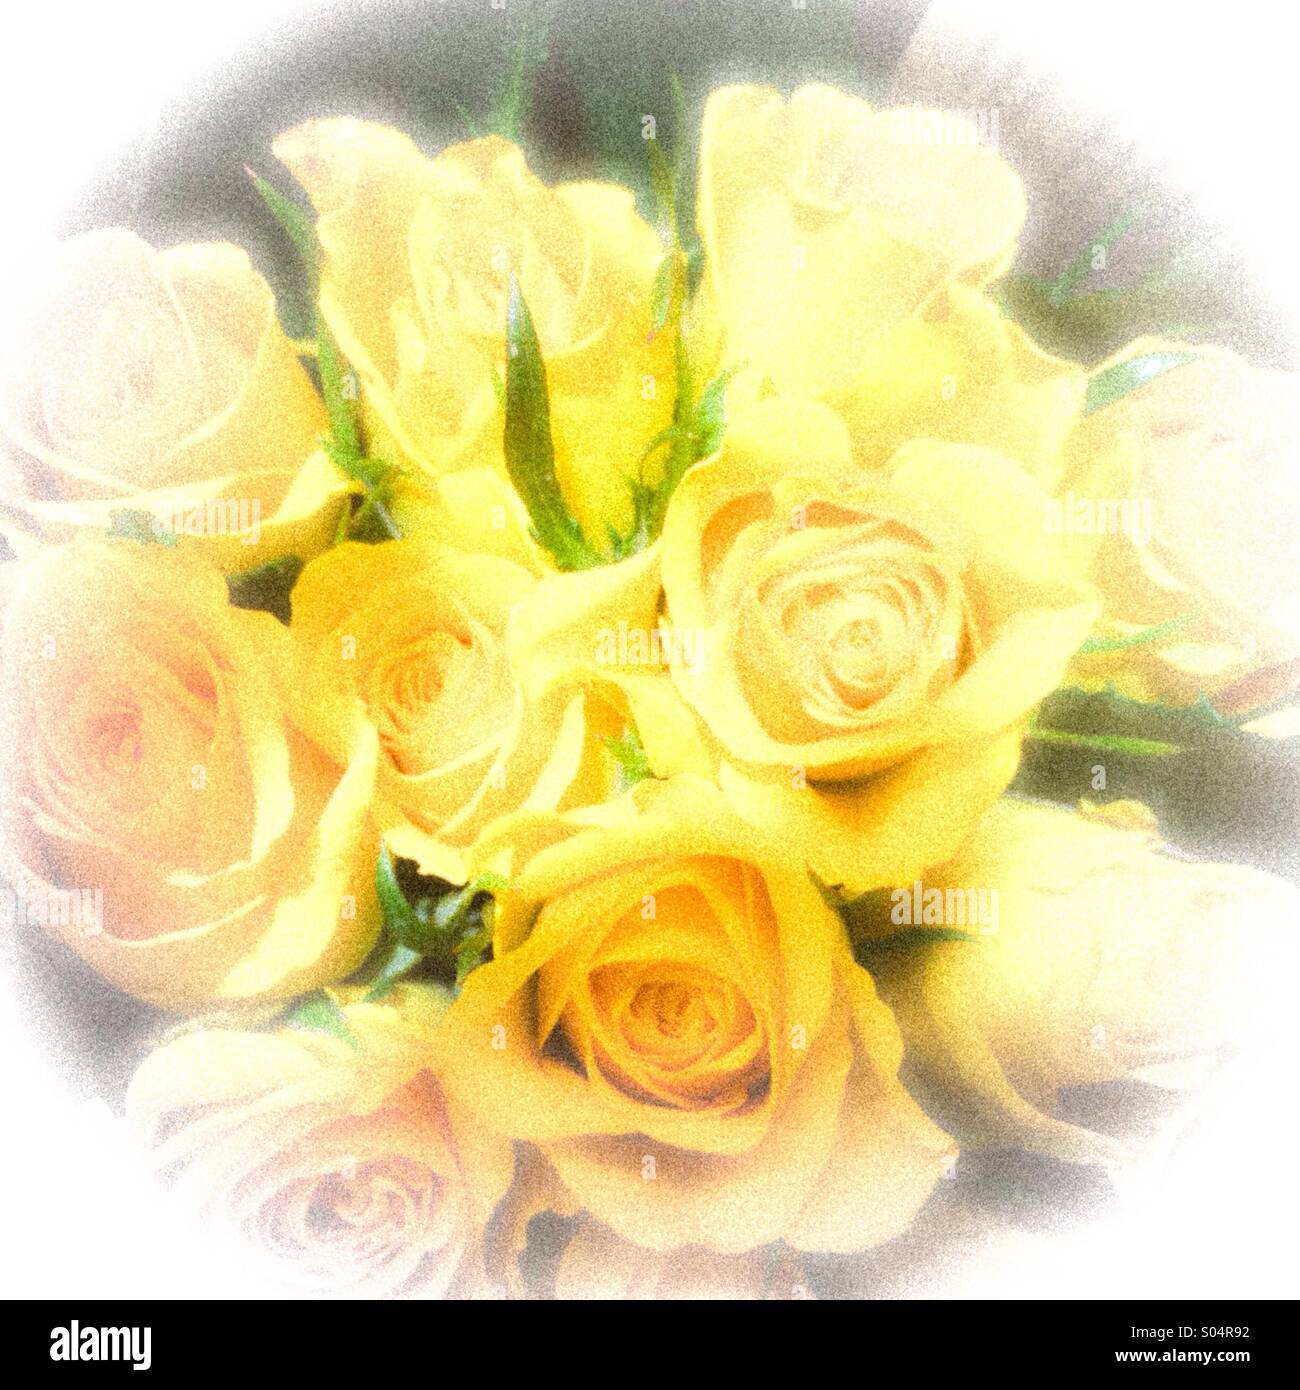 Fond jaune pâle roses Banque D'Images